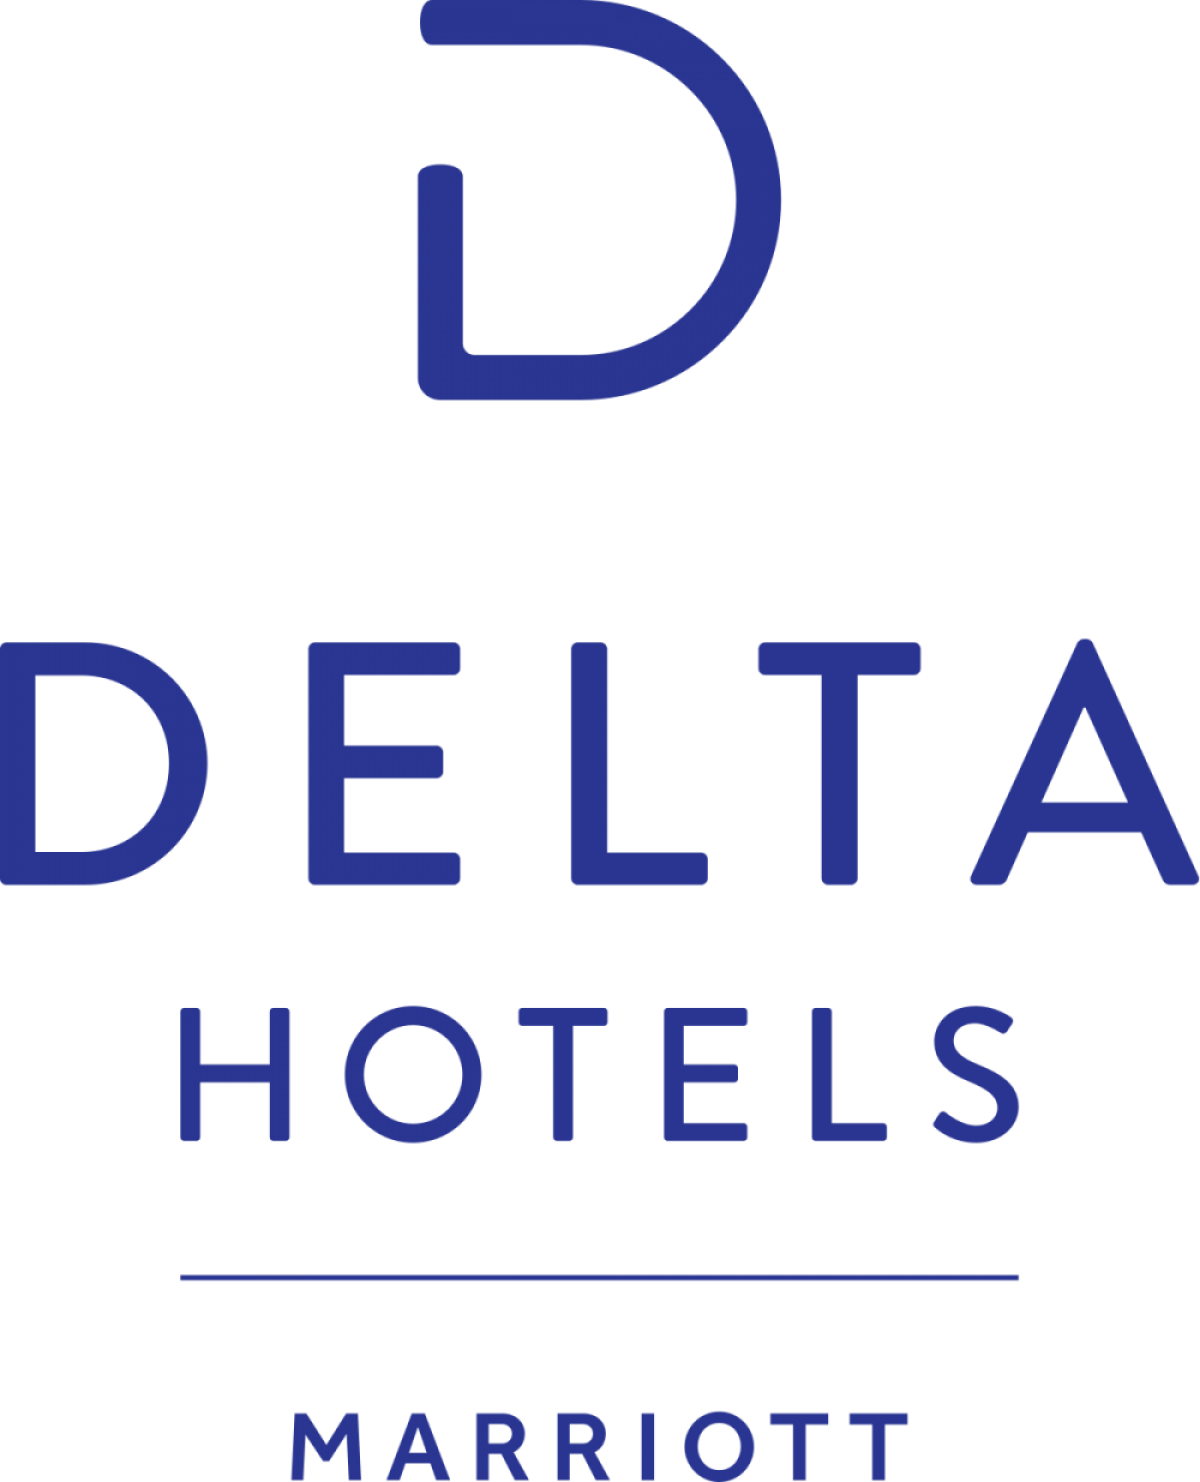 Delta_Hotels_logo.svg_.png